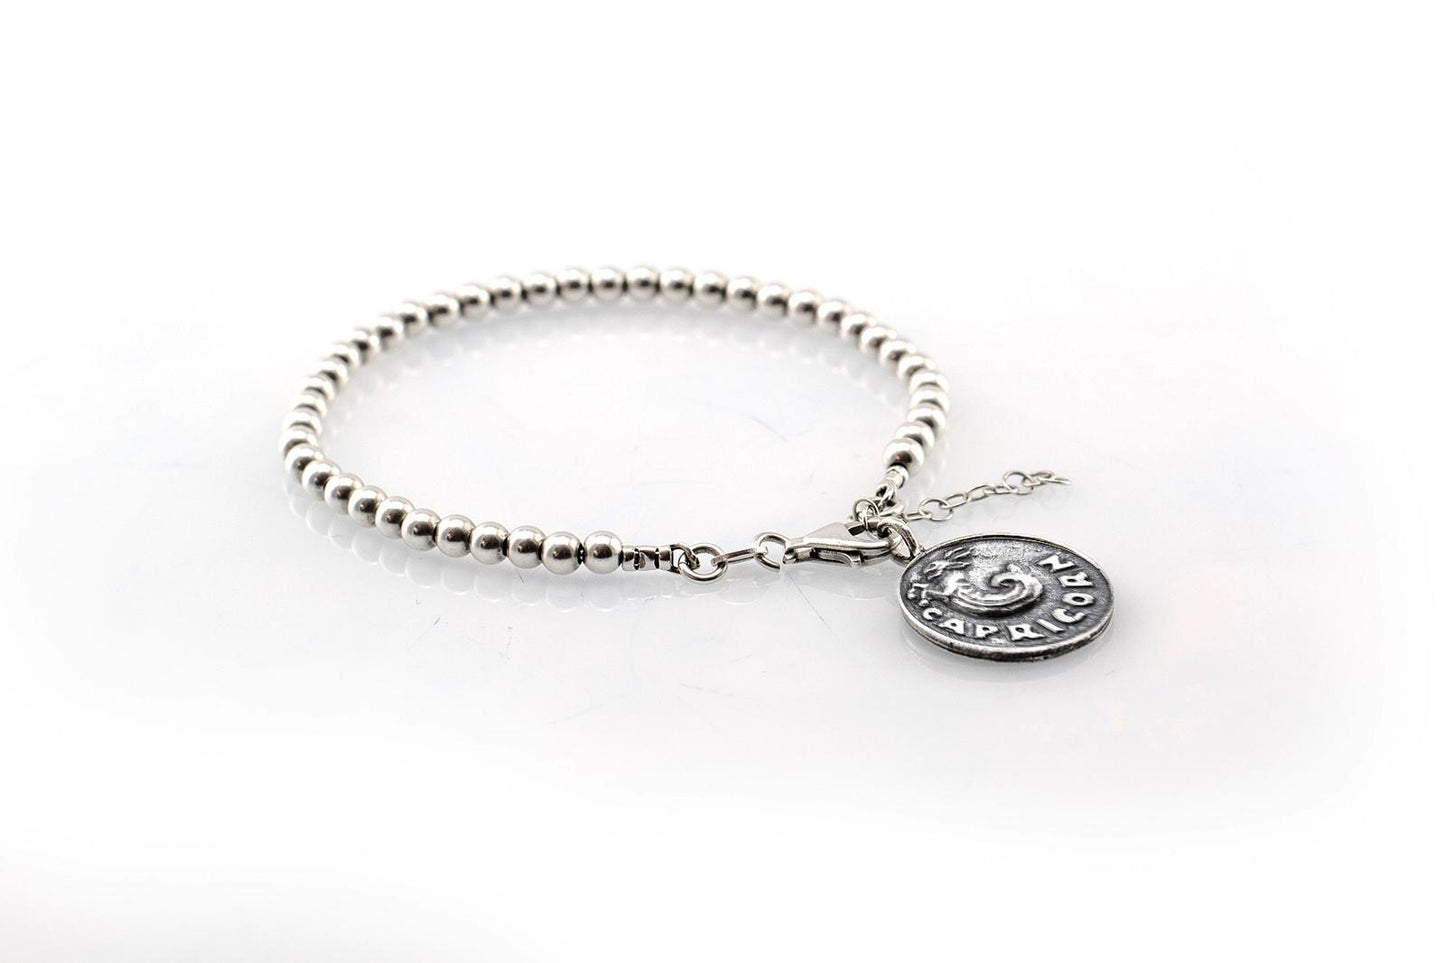 Aquarius medallion with a Bead Bracelet -Zodiac jewelry -One of kind jewelry